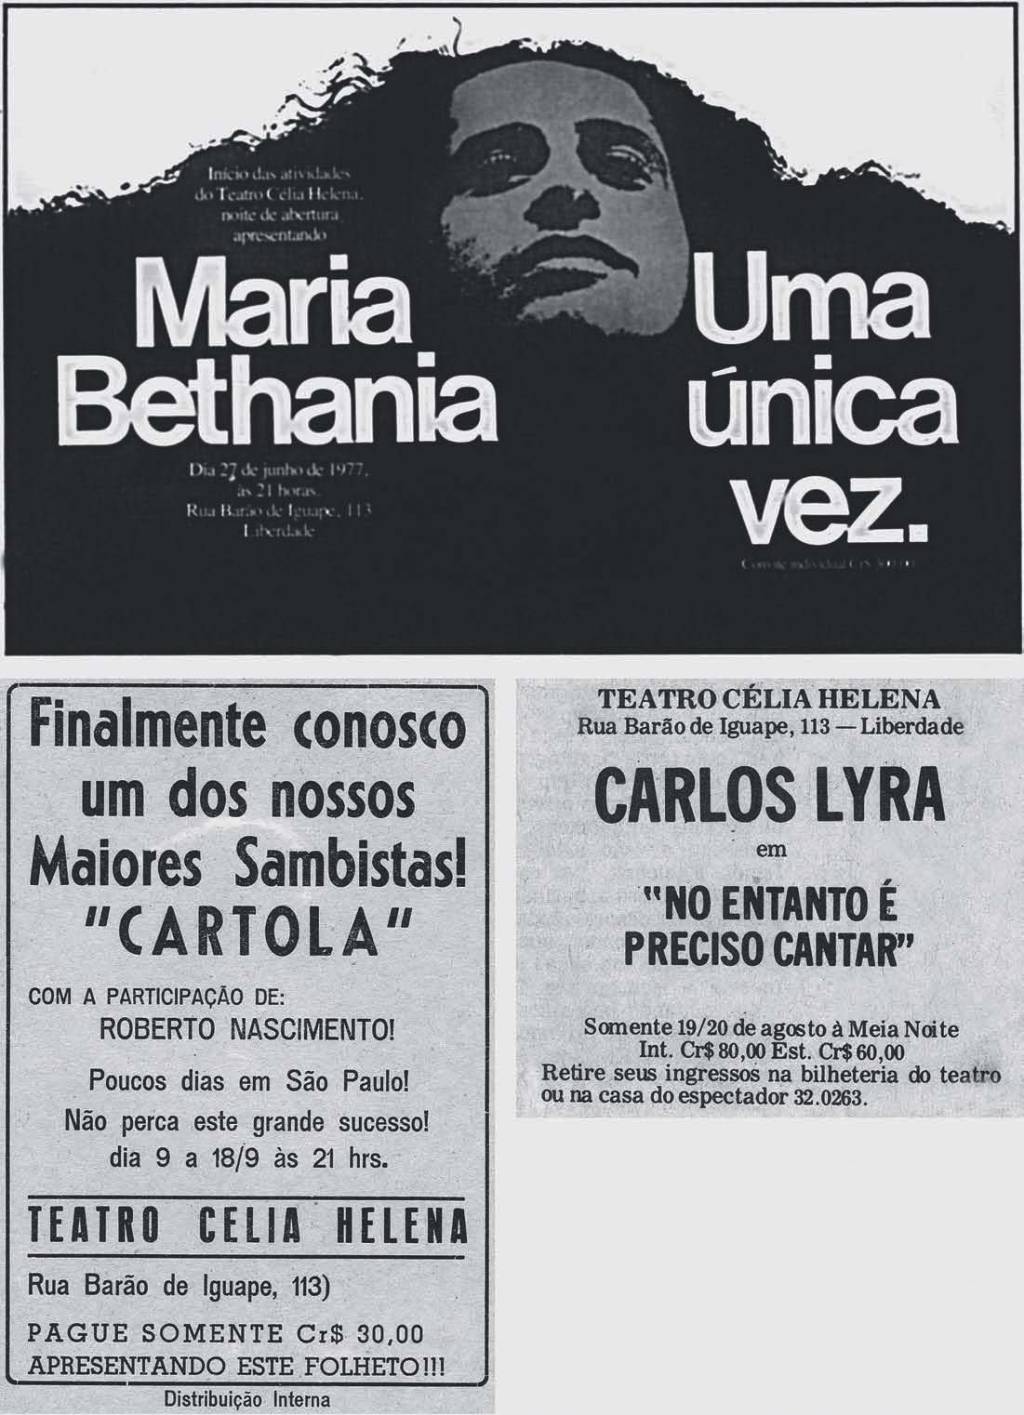 Foto em preto e branco de anúncio de inauguração do teatro, com show de Maria Bethânia.